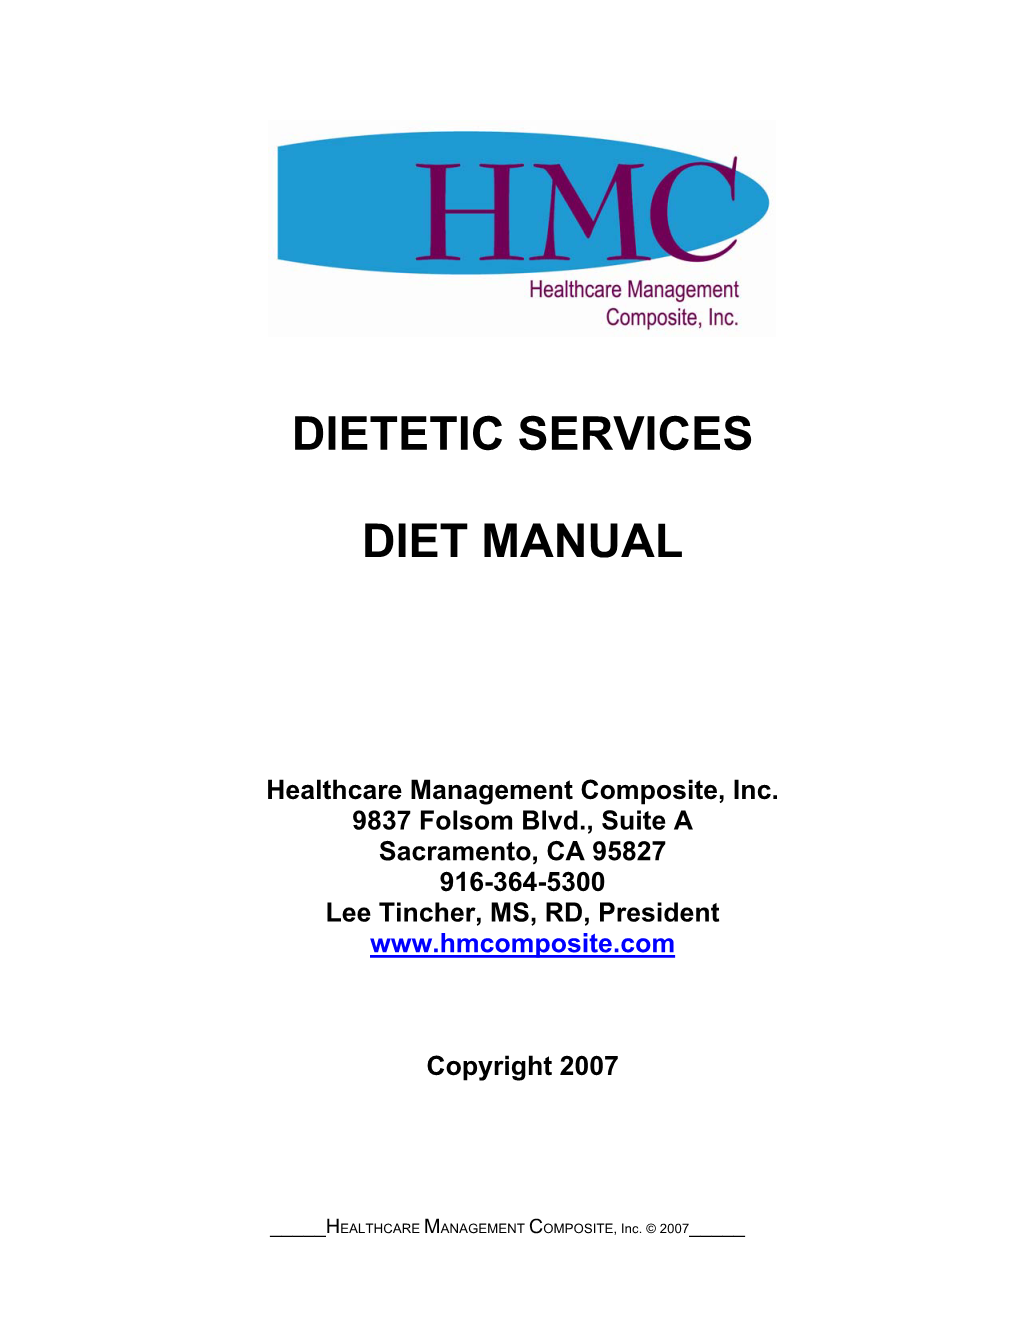 Dietetic Services Diet Manual, Healthcare Management Composite, Inc